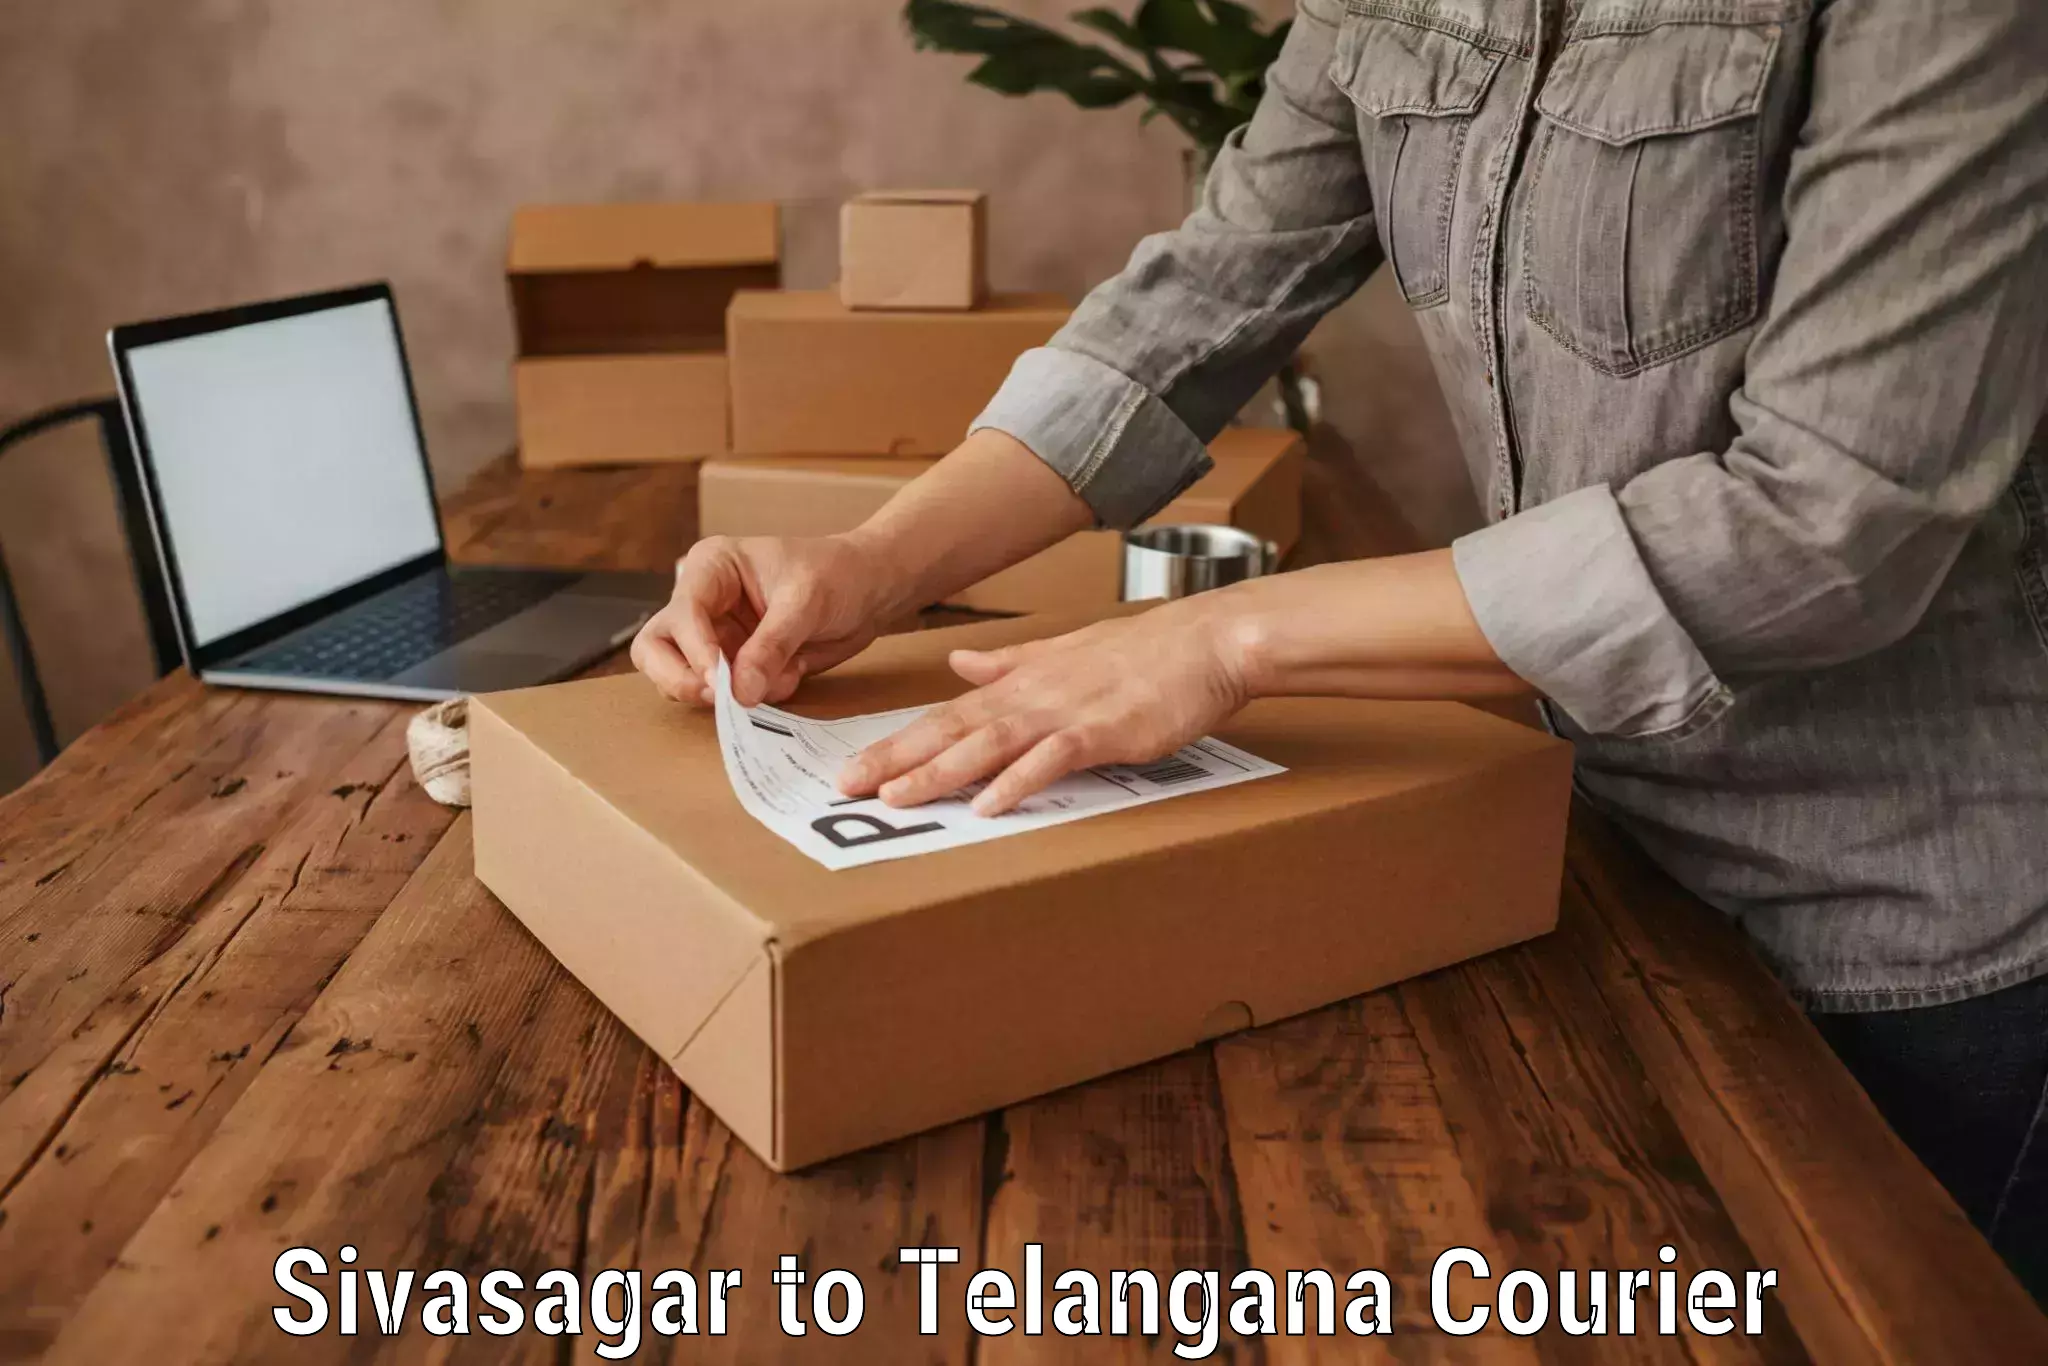 Luggage delivery app Sivasagar to Armoor